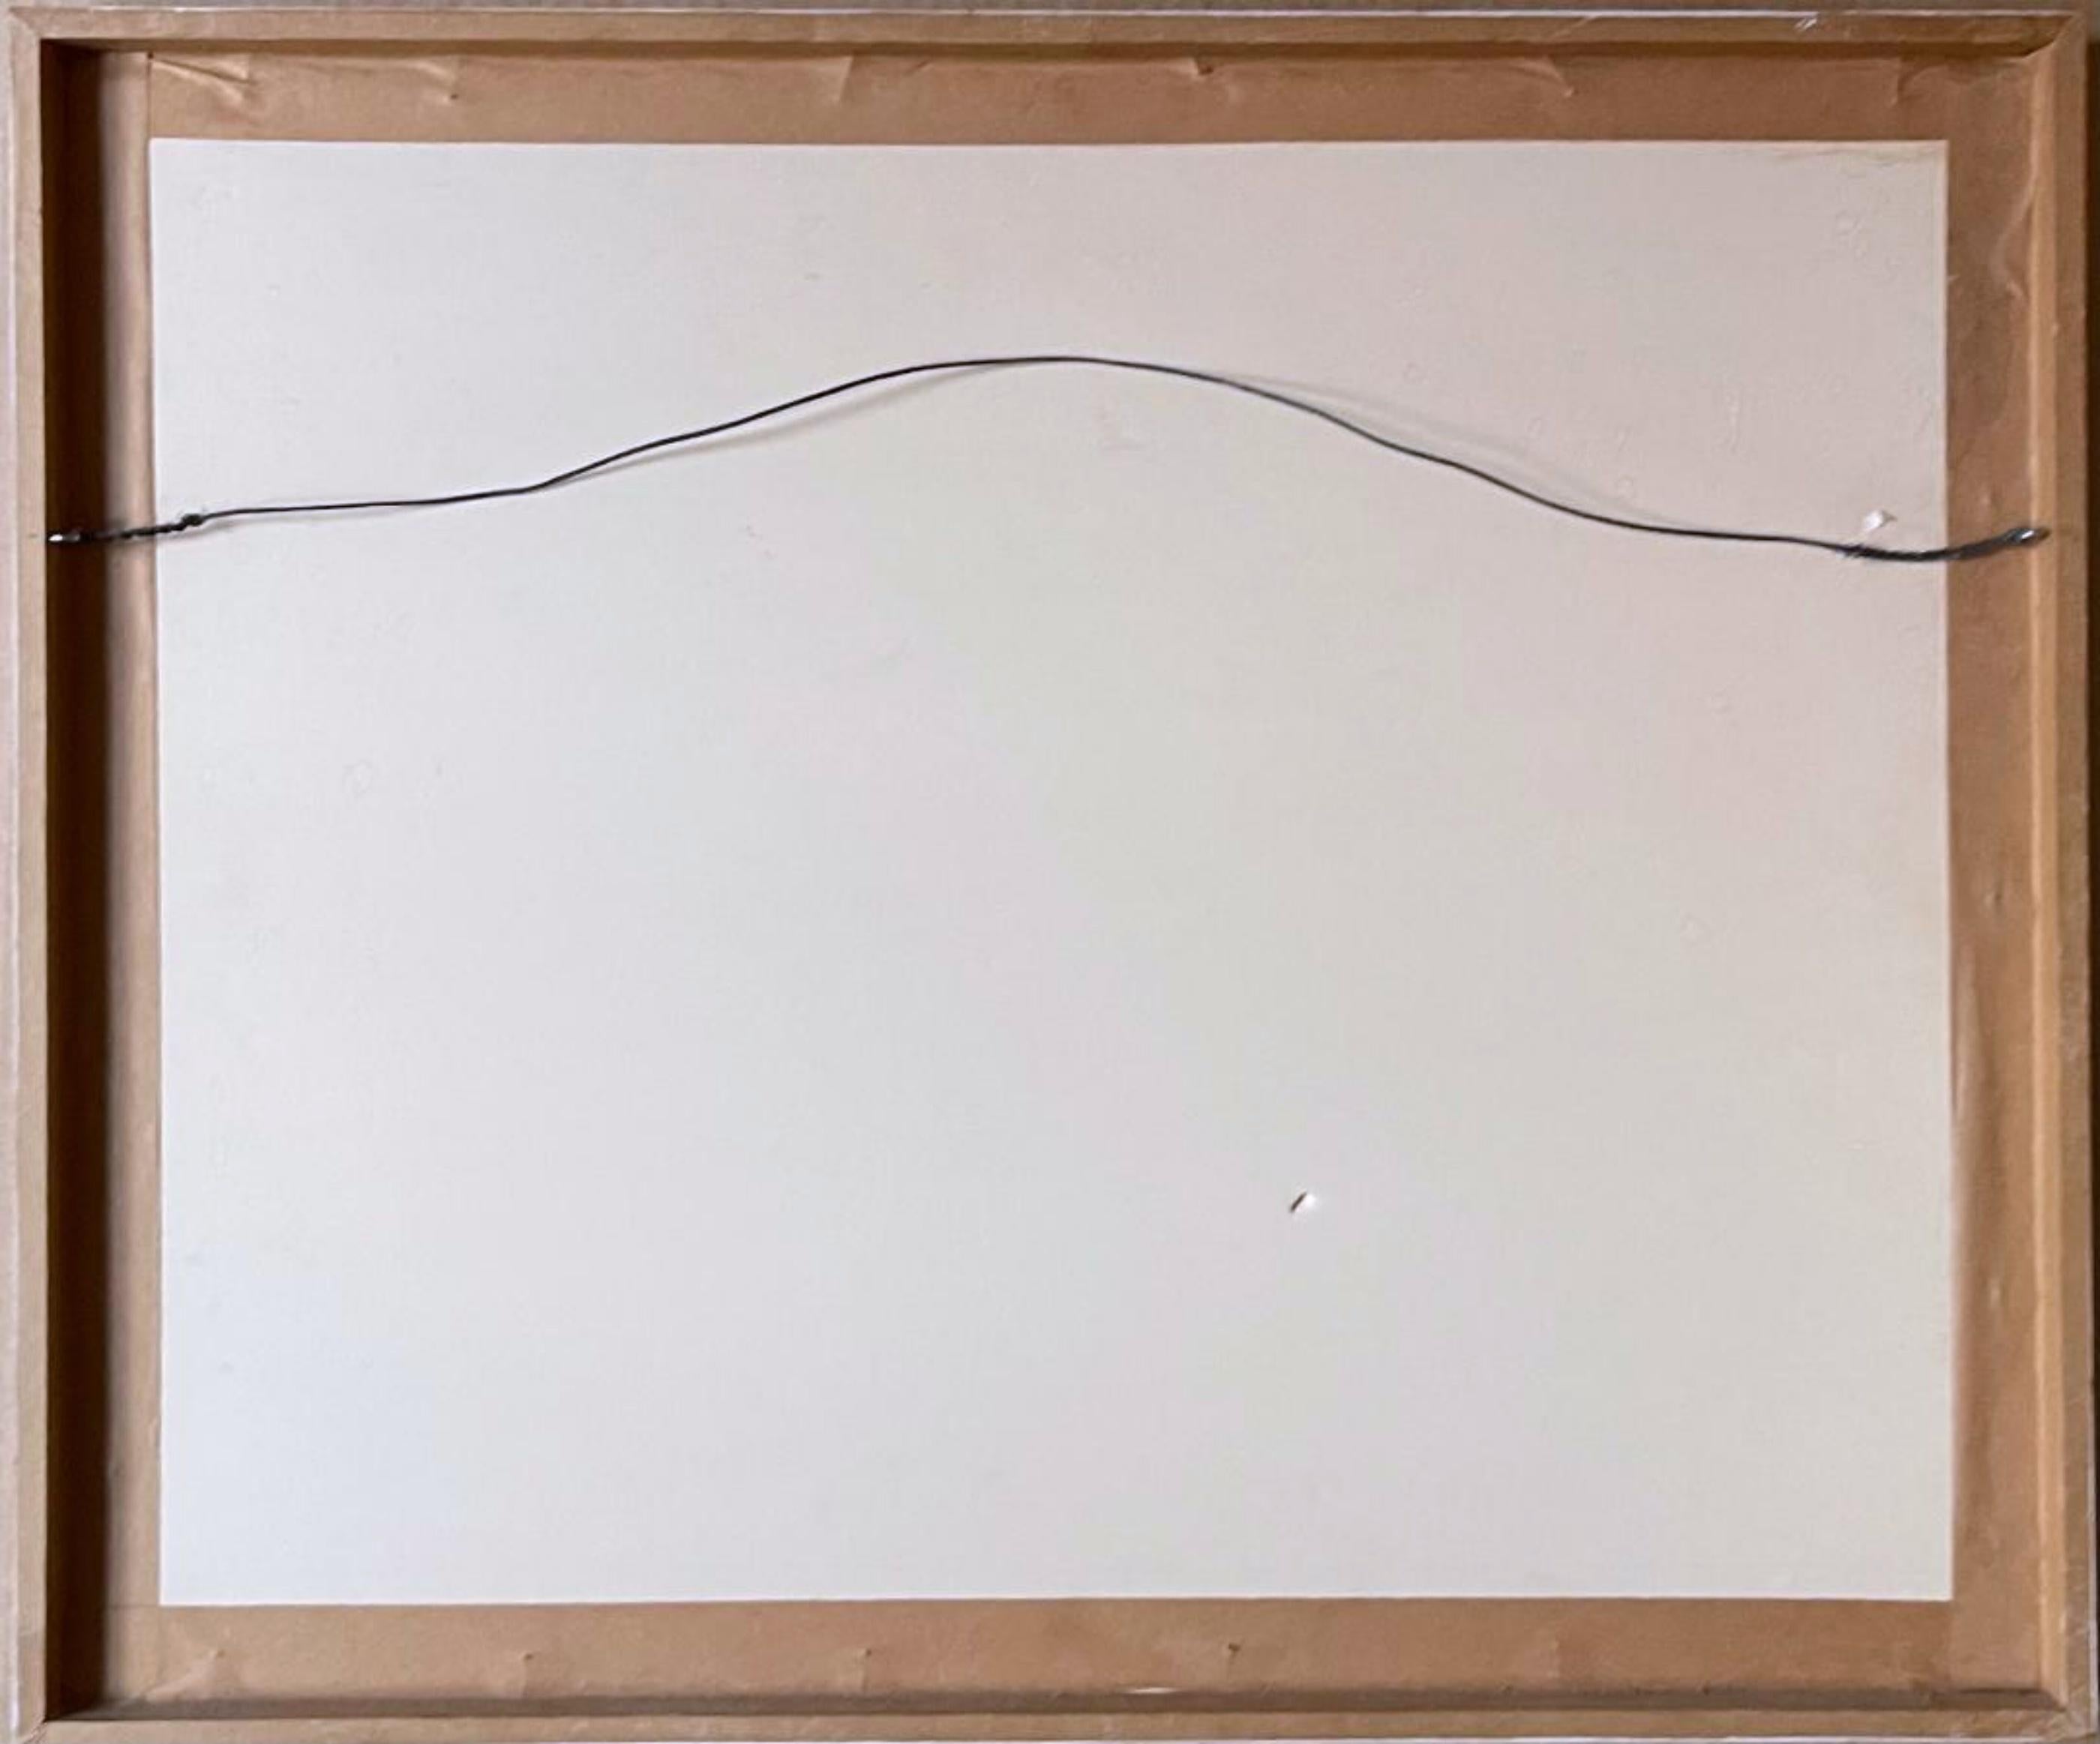 WOLFS Kahn
Sans titre, 1982
Gravure originale
10 × 15 pouces
Édition AP (en dehors de l'édition normale de 90)
 crayon signé, daté et inscrit à Cynthia
Cadre inclus : Livré encadré dans son cadre d'origine
Signé au crayon, daté et annoté d'une